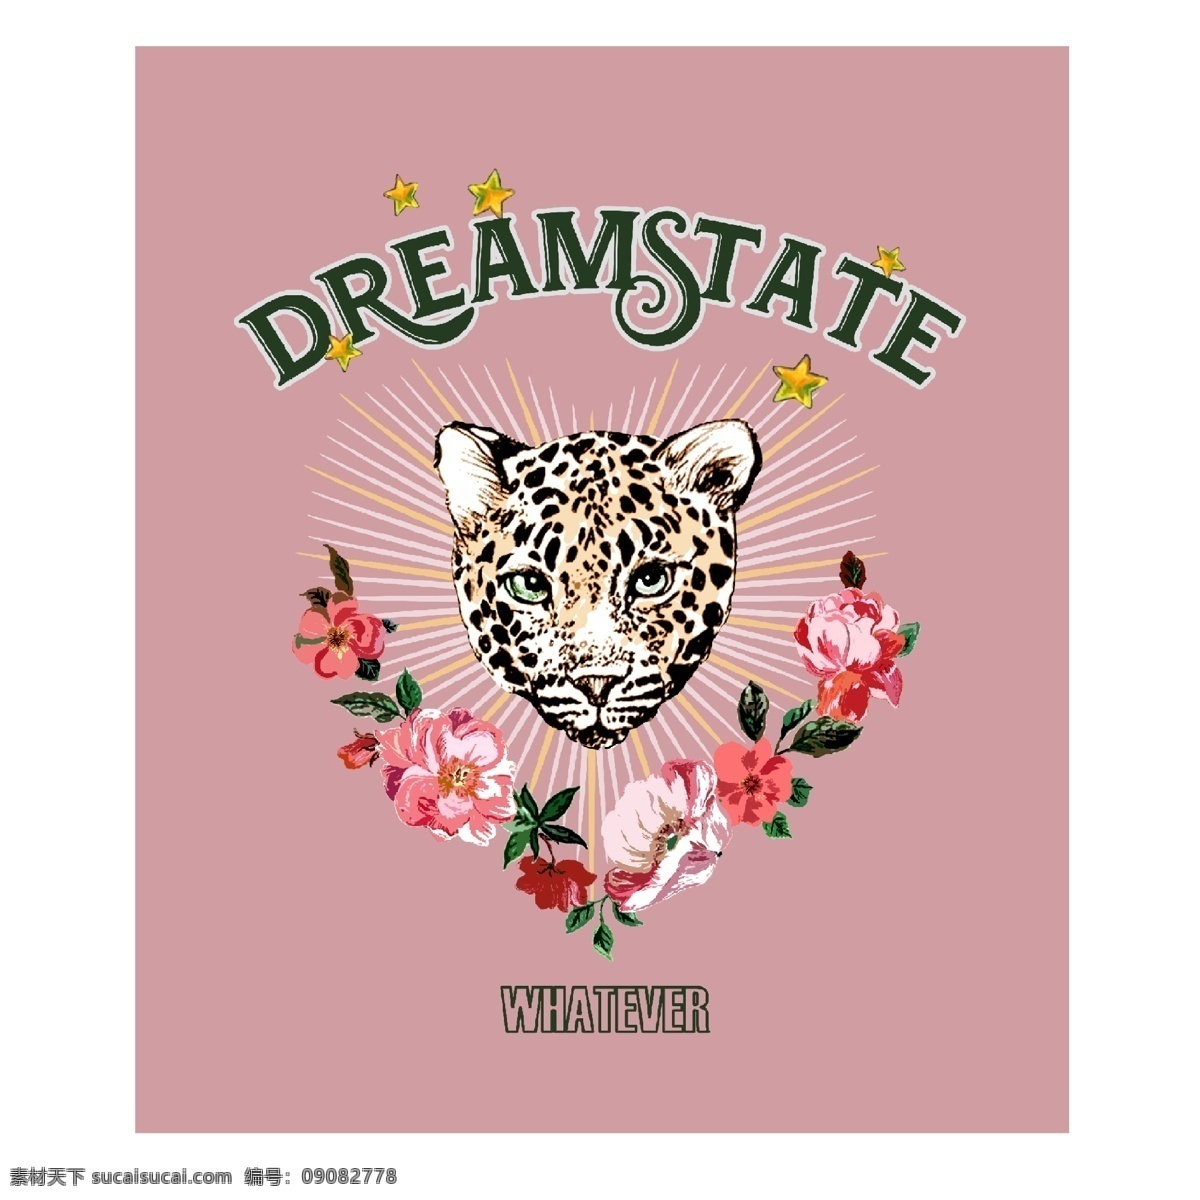 豹子 动物 t 恤 印花 图案 t恤图案 潮牌 卡通 字母 花卉 爱心 发光 星星